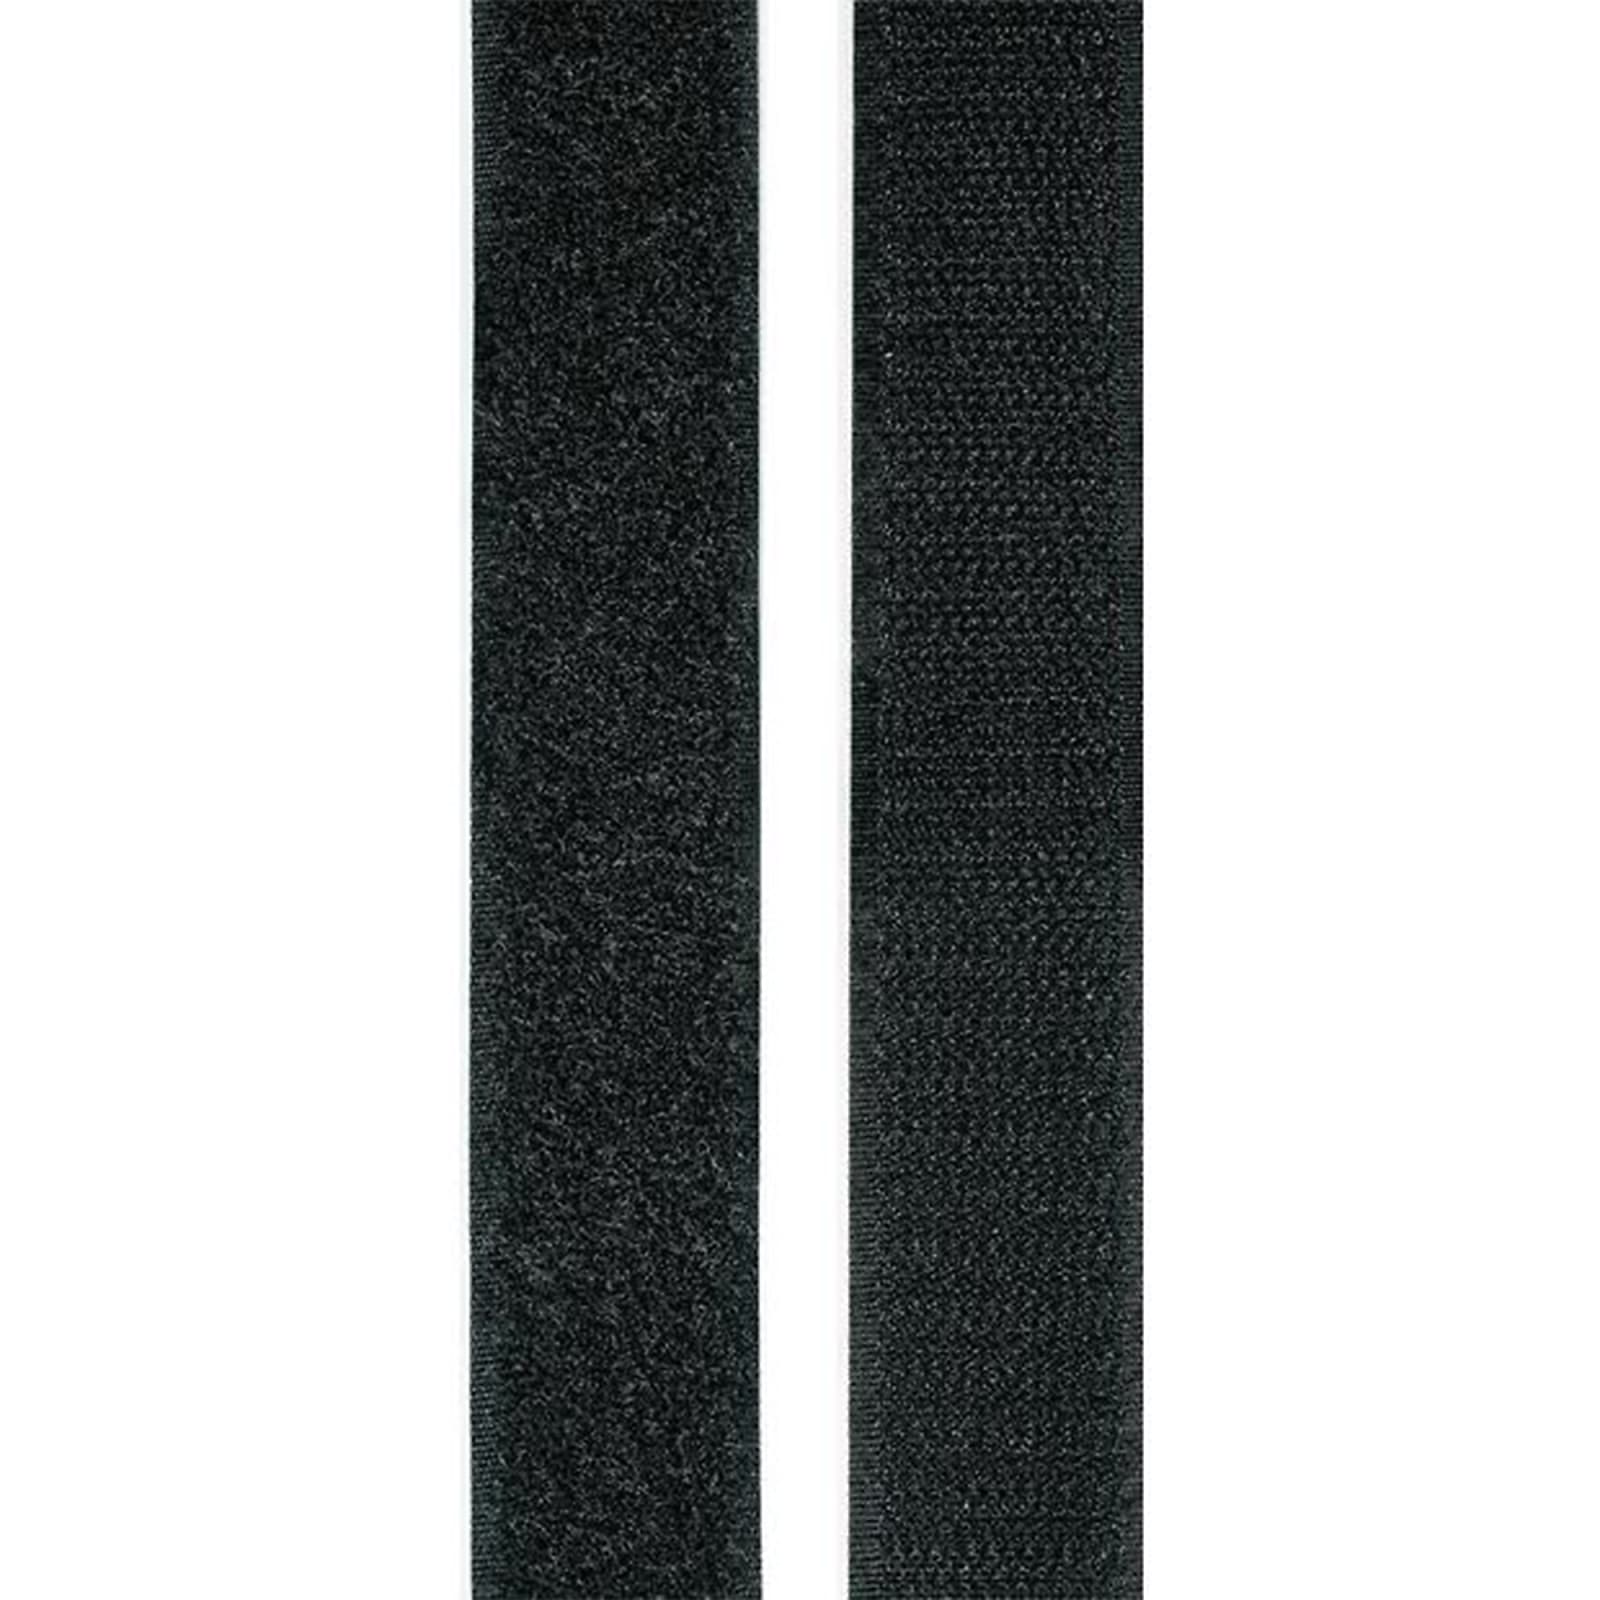 Rockboard HL-TAPE-100 Hook & Loop Tape (100 x 5 cm) | Reverb